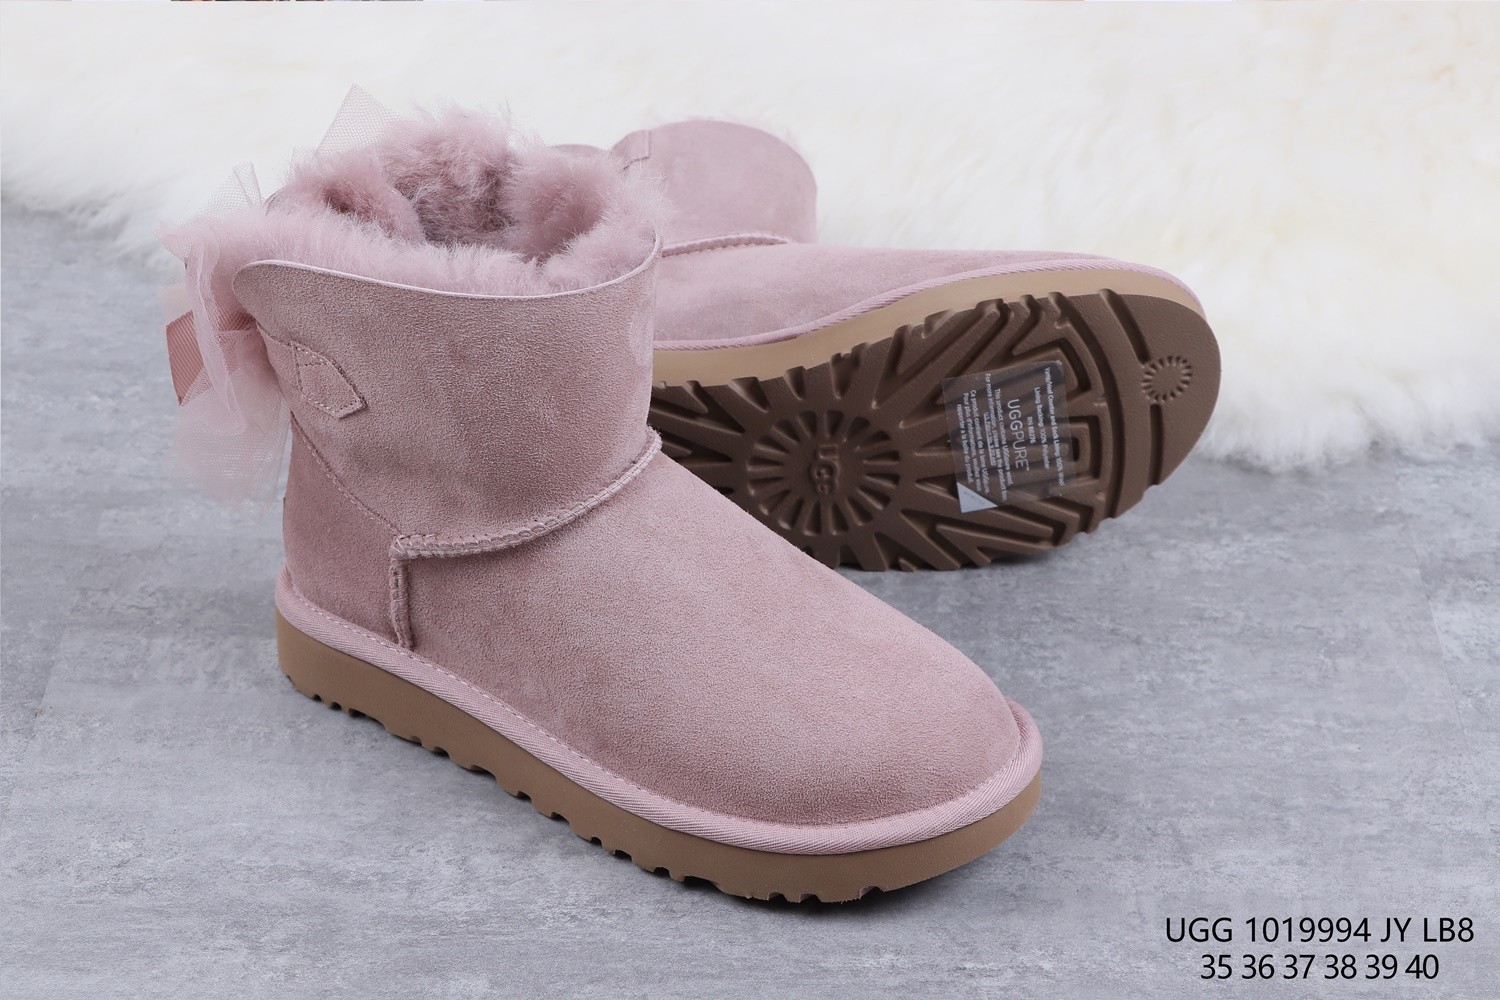 UGG Women's Shoes 251